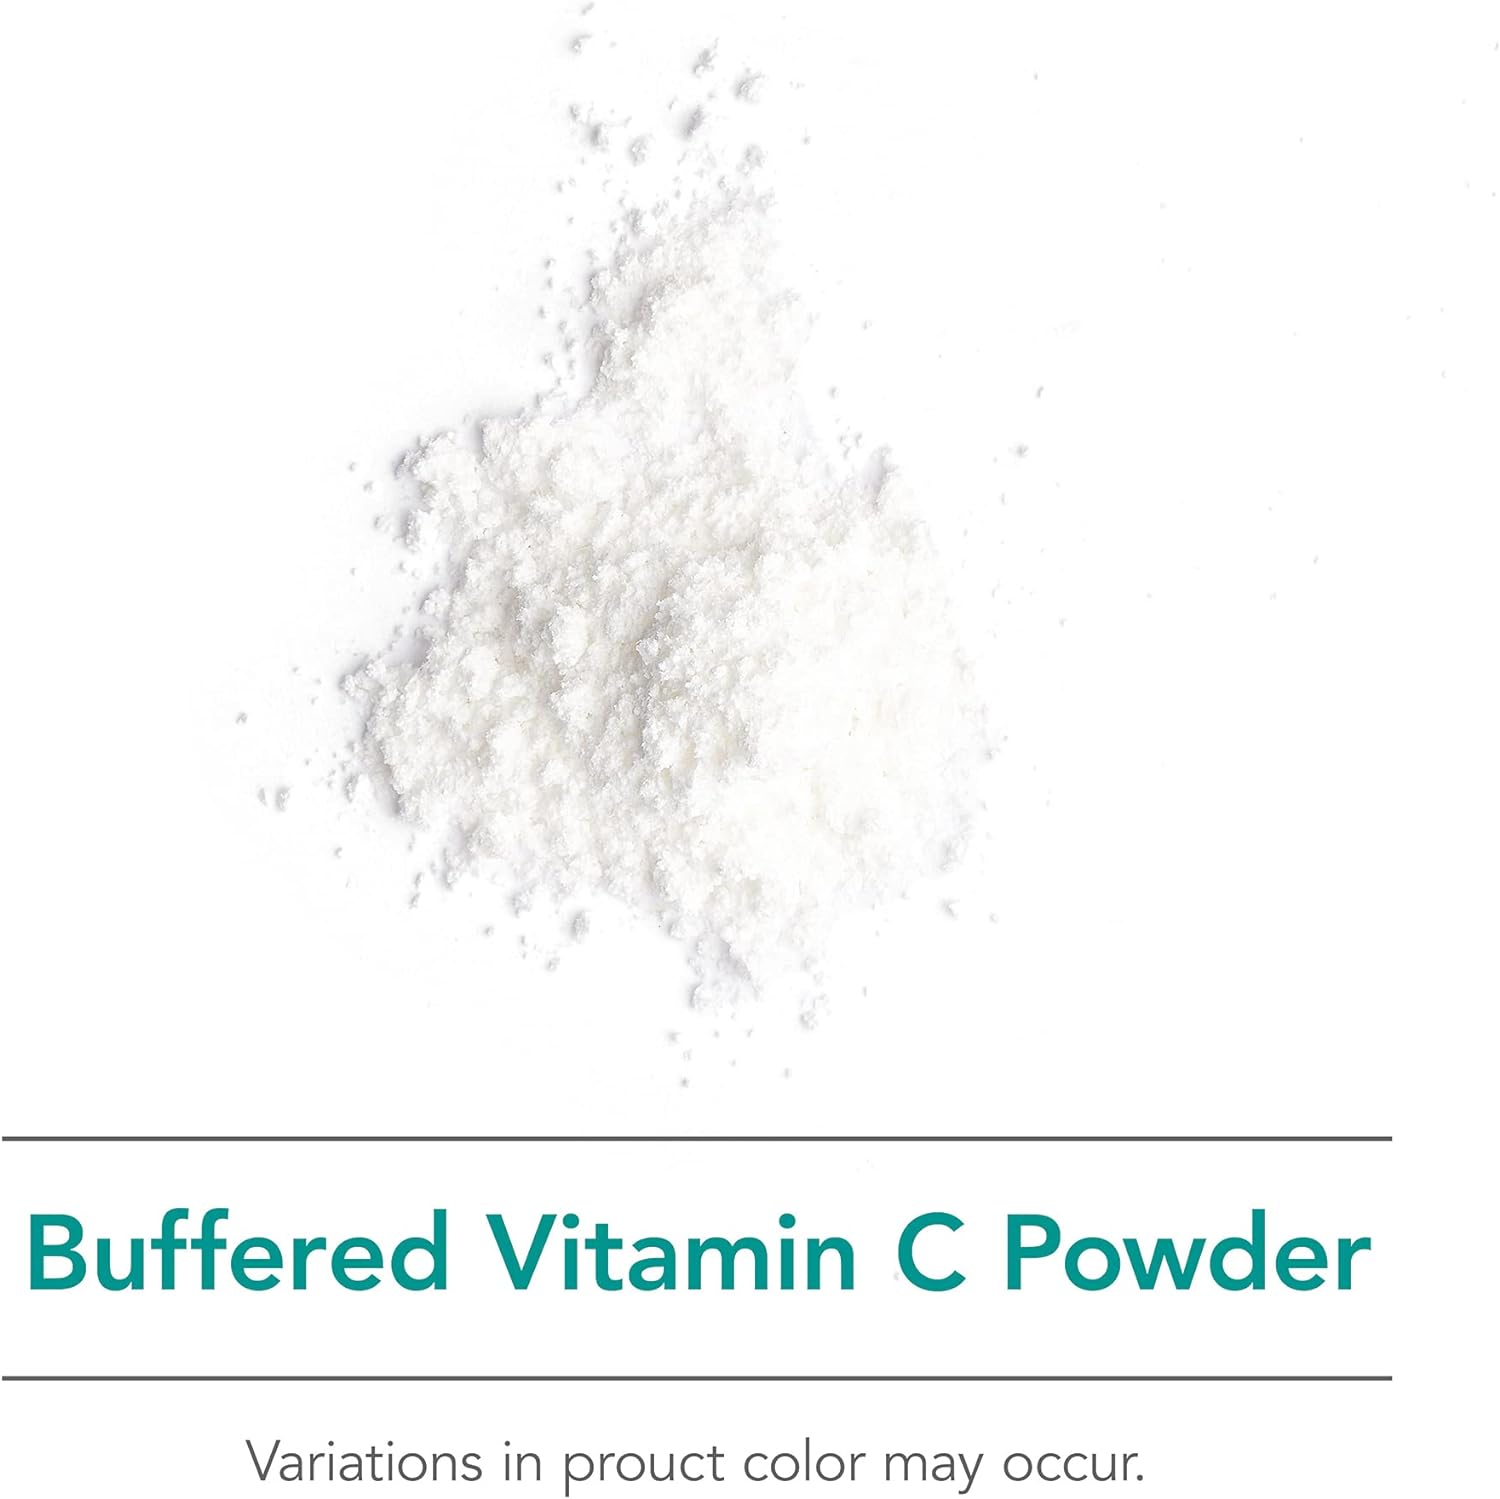 NutriCology Buffered Vitamin C Powder - Calcium, Magnesium, Potassium 